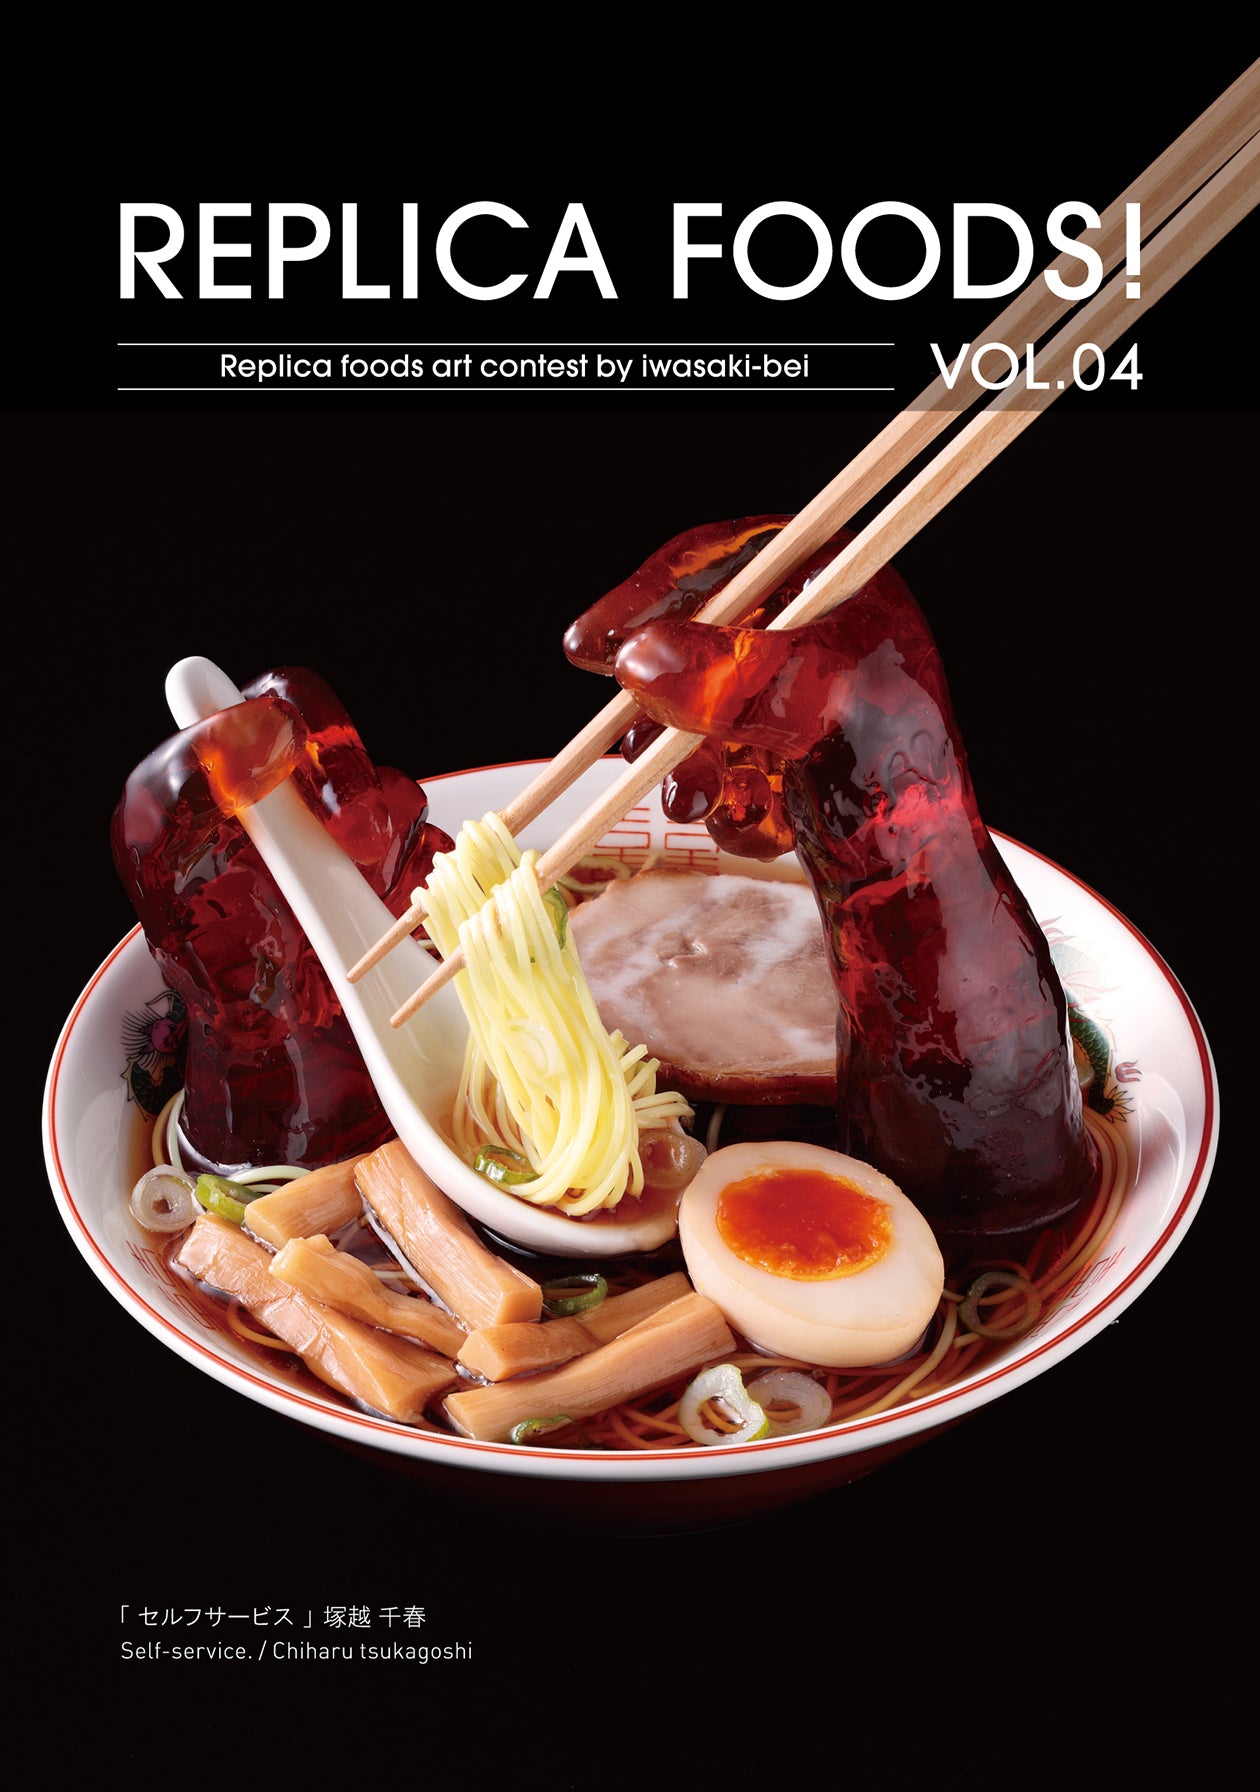 これは元祖食品サンプル屋[写真集]REPLICA FOOD! VOL.04の表紙画像です。